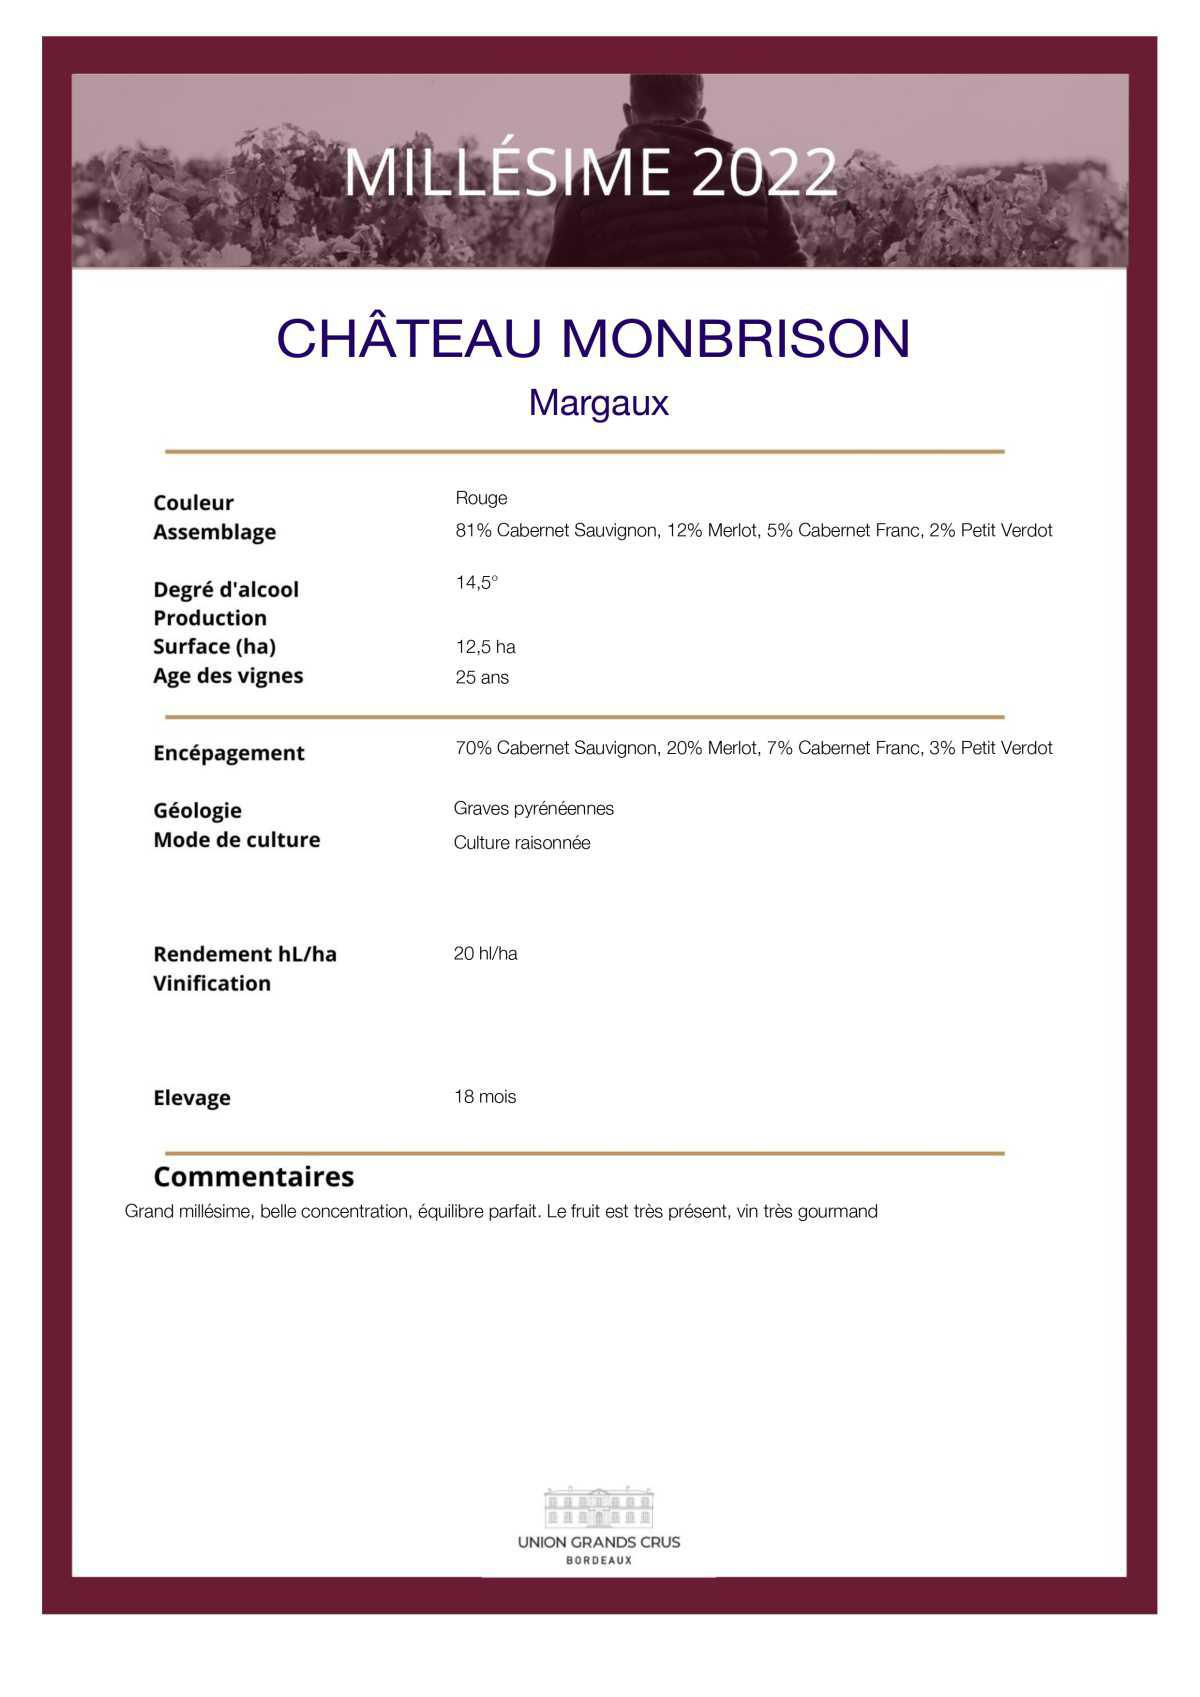  Château Monbrison